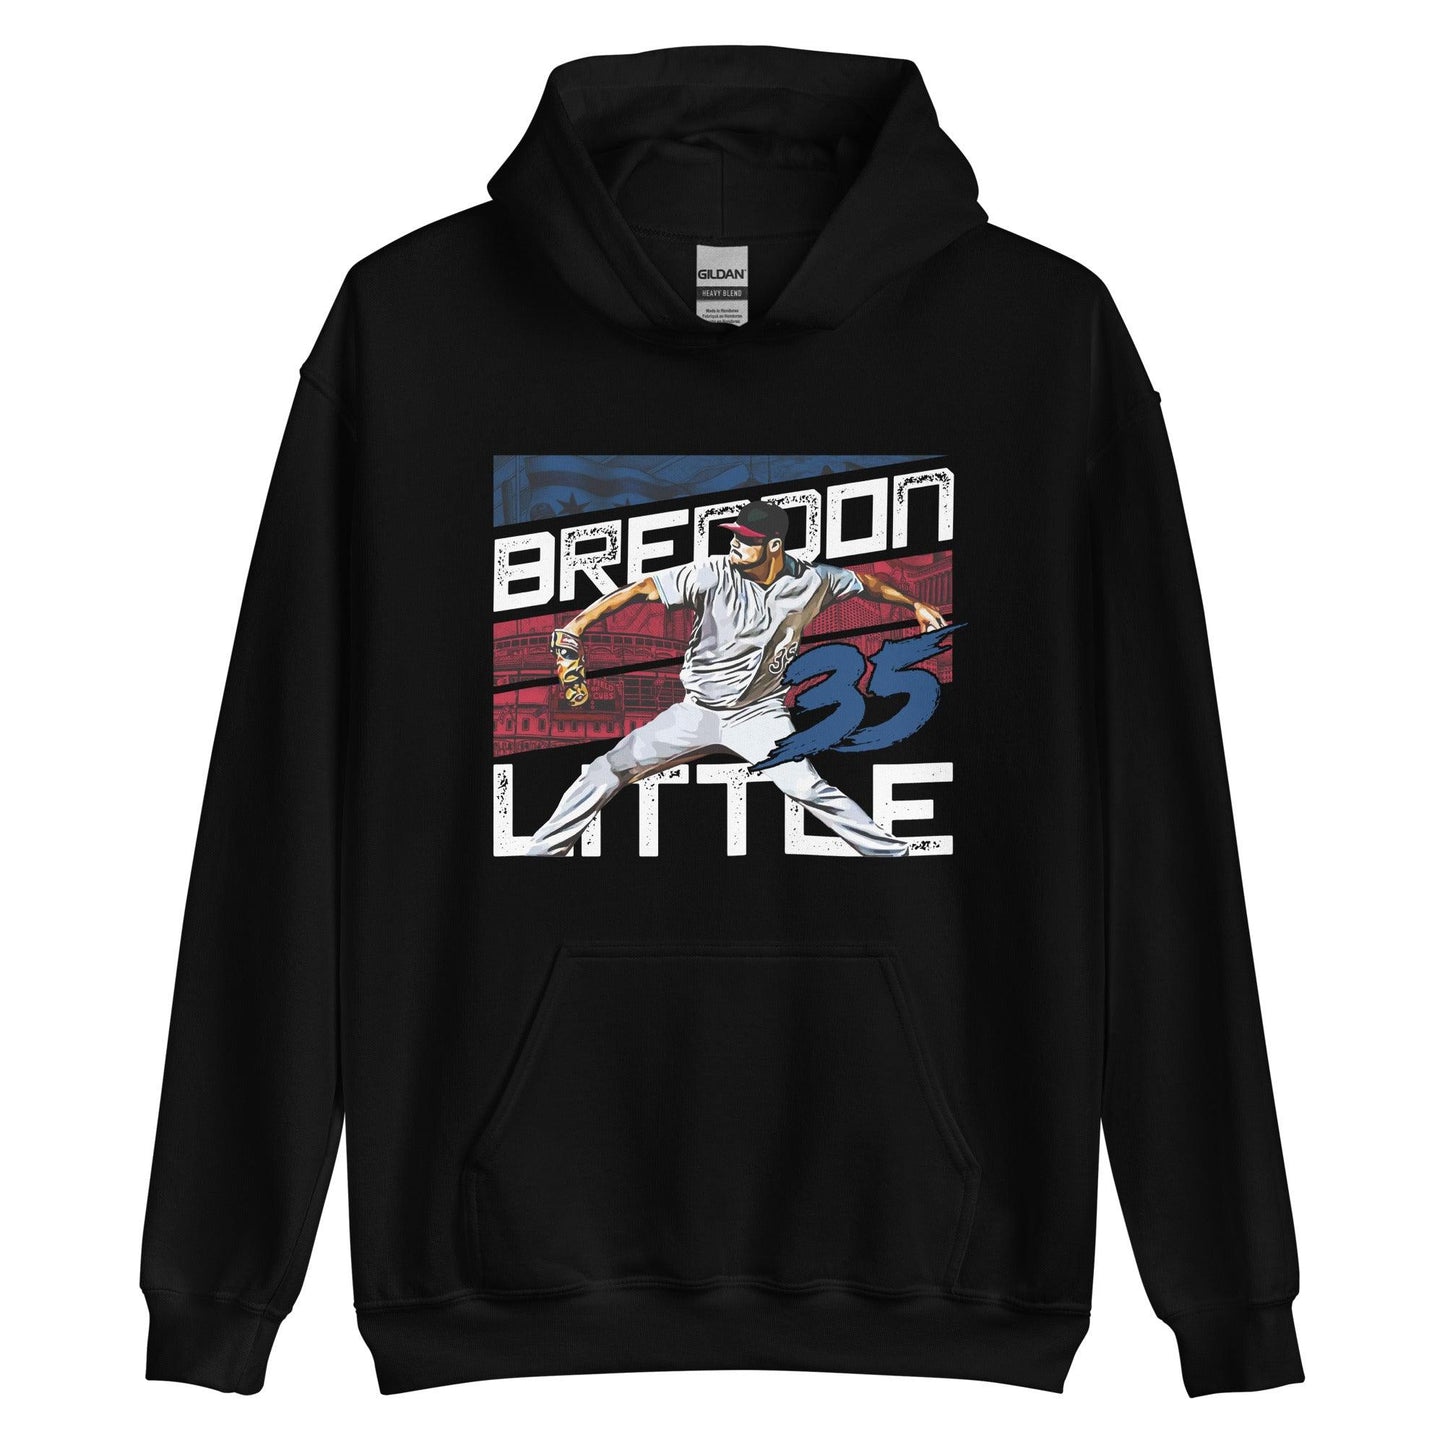 Brendon Little "35" Hoodie - Fan Arch